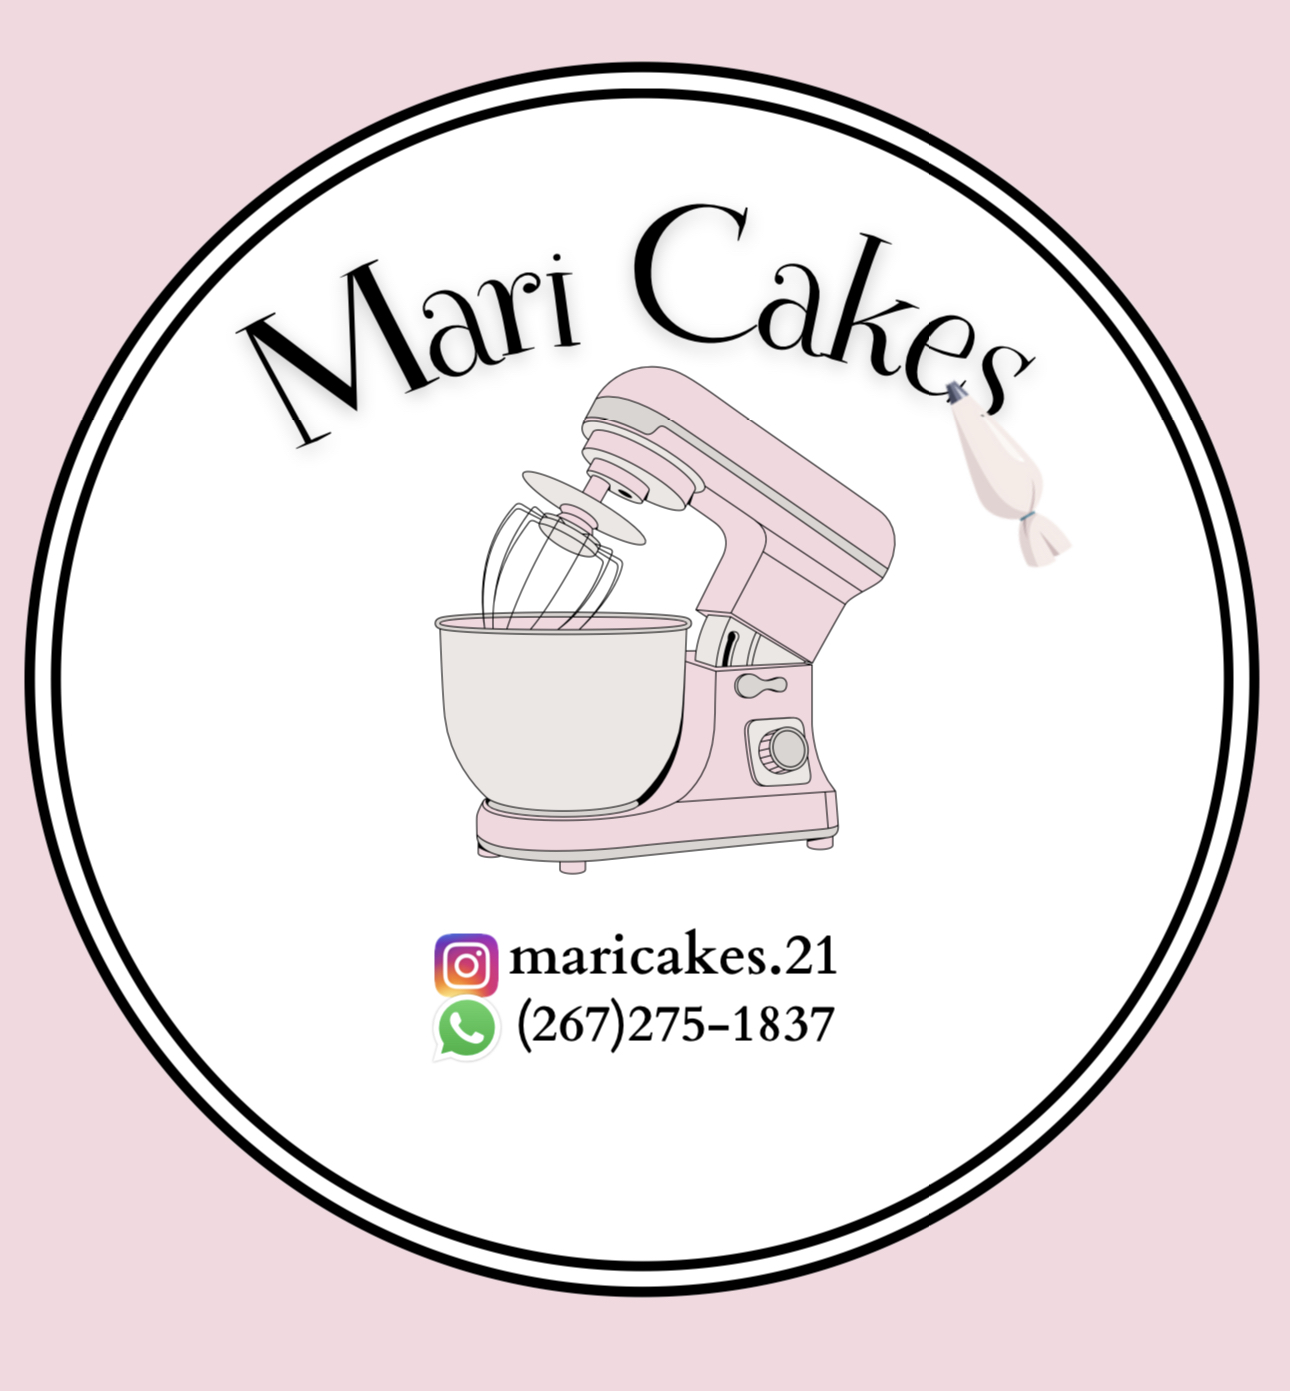 Mari cakes